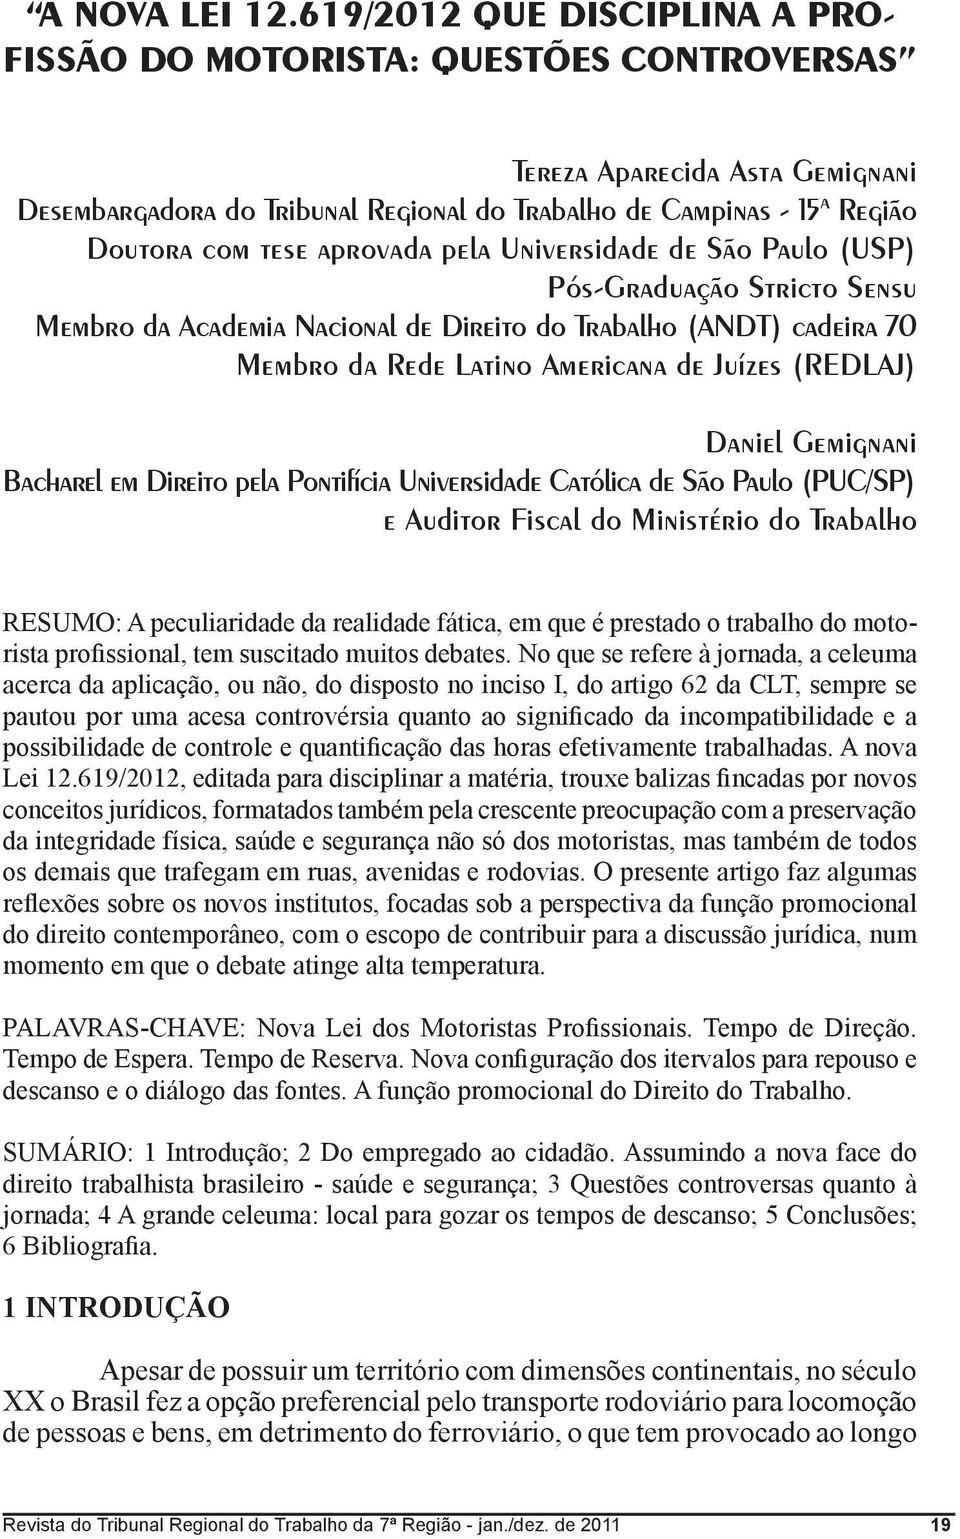 aprovada pela Universidade de São Paulo (USP) Pós-Graduação Stricto Sensu Membro da Academia Nacional de Direito do Trabalho (ANDT) cadeira 70 Membro da Rede Latino Americana de Juízes (REDLAJ)